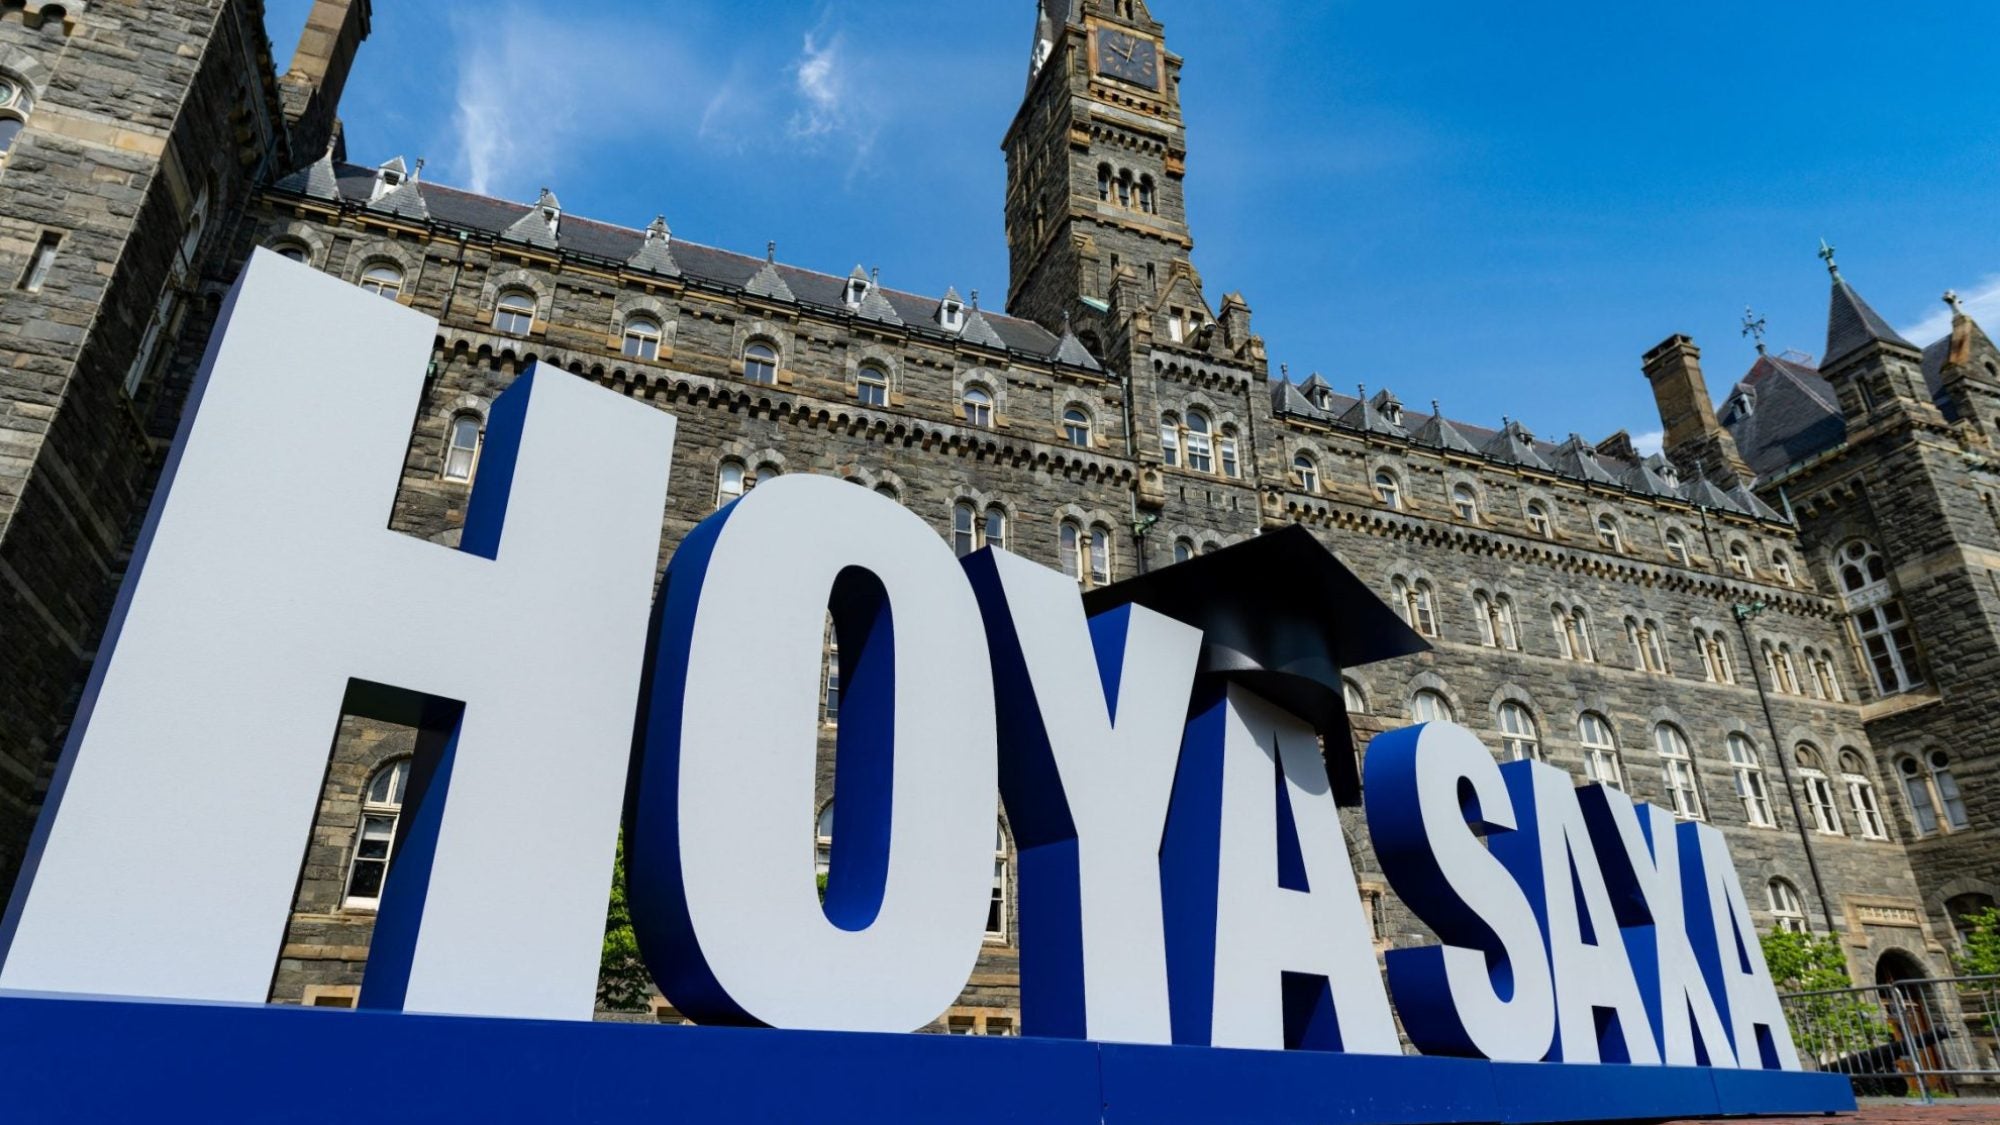 Hoya Saxa sign on Healy Lawn